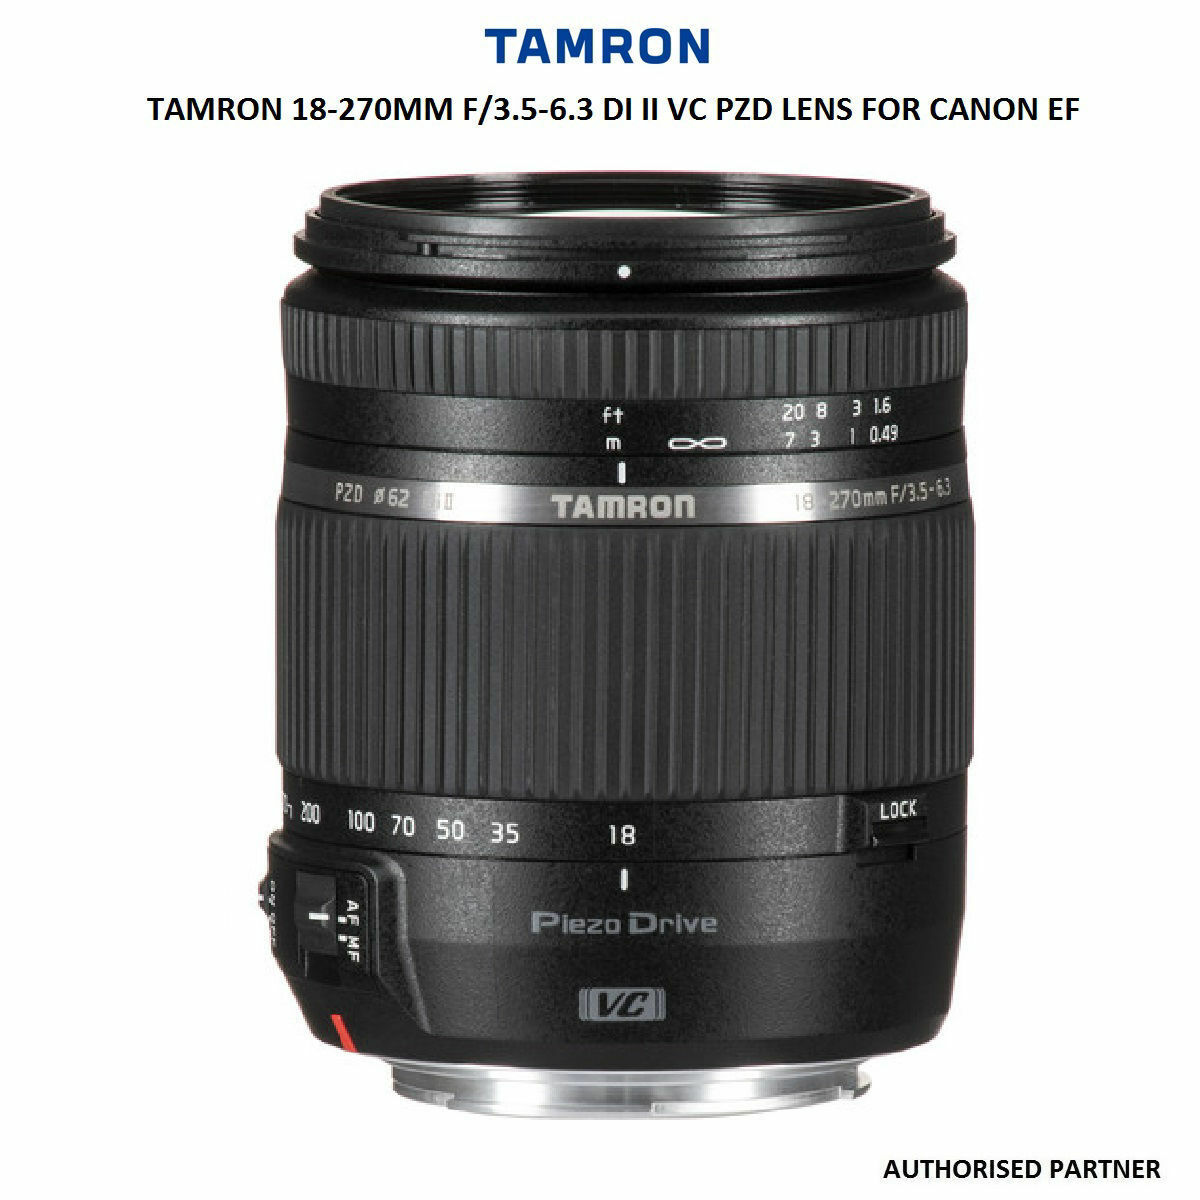 Tamron 18-270mm F3.5-6.3 Di II PZD Canon